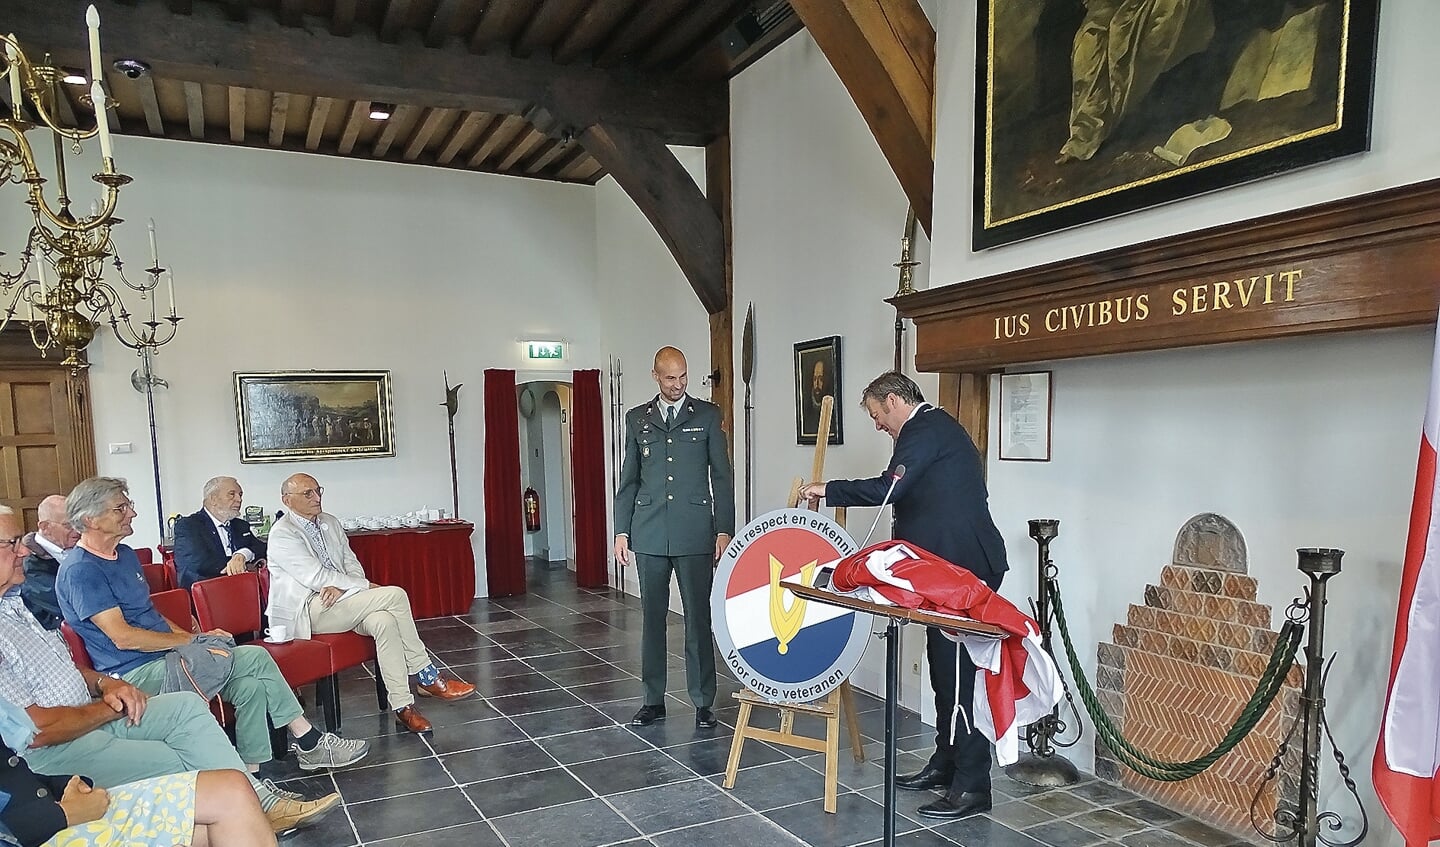 Burgemeester de Vries en Ronald Gabriels onthuldenhet ontwerp van de Oudewaterse Veteran Coin.